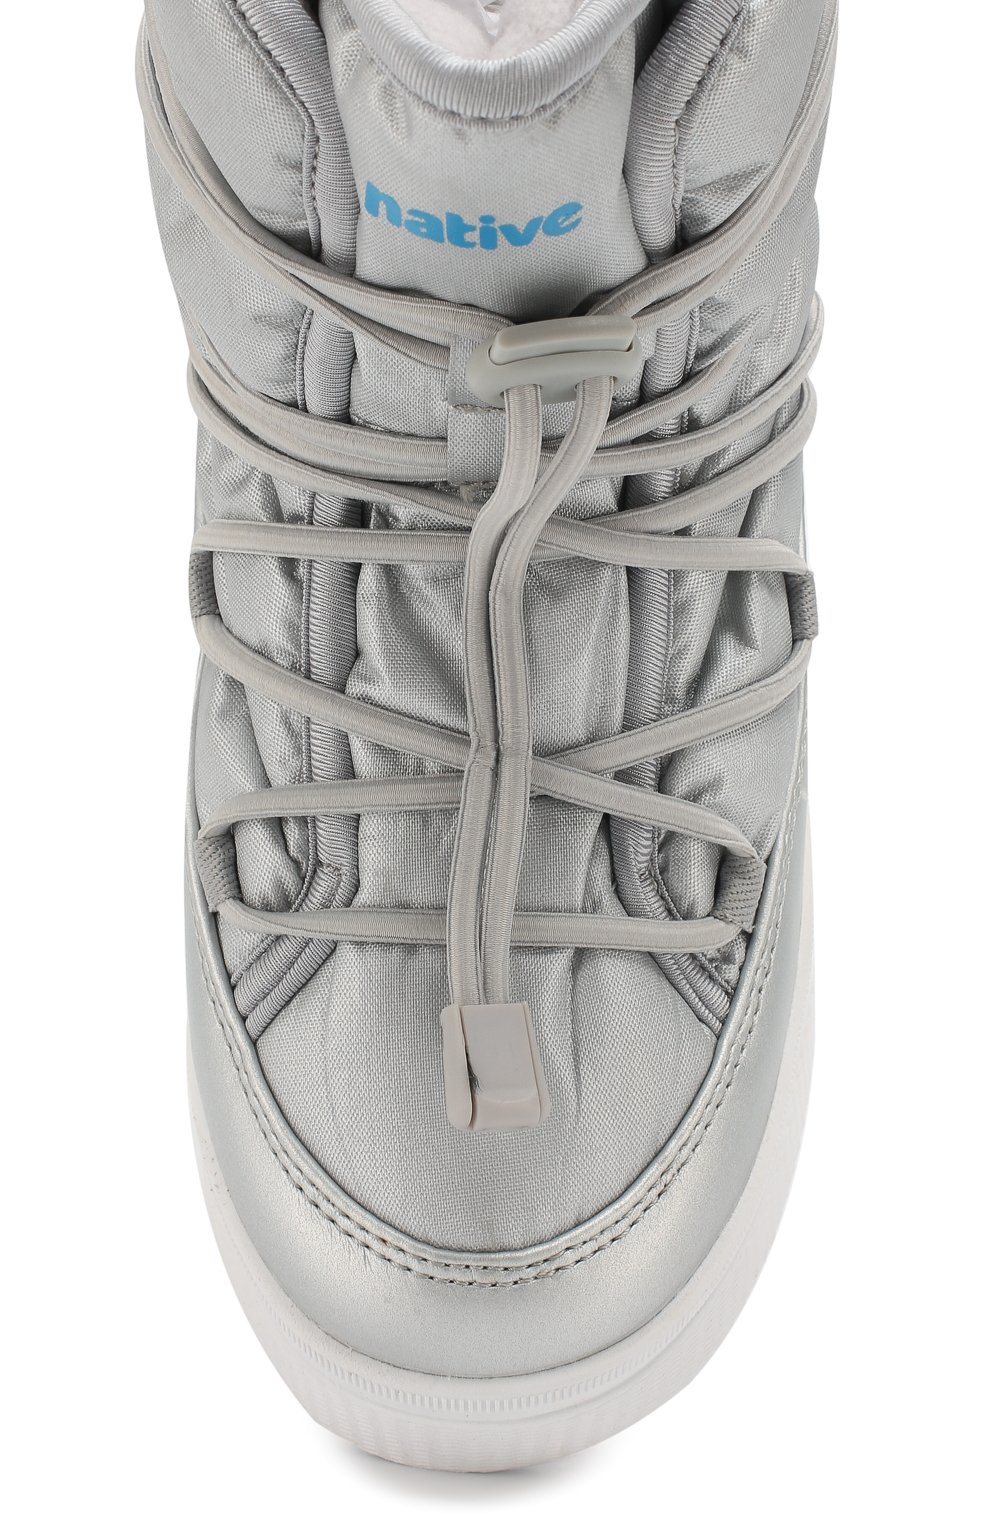 Утепленные ботинки Chamonix NATIVE детские серебряного цвета — купить винтернет-магазине ЦУМ, арт. 43106000-1902